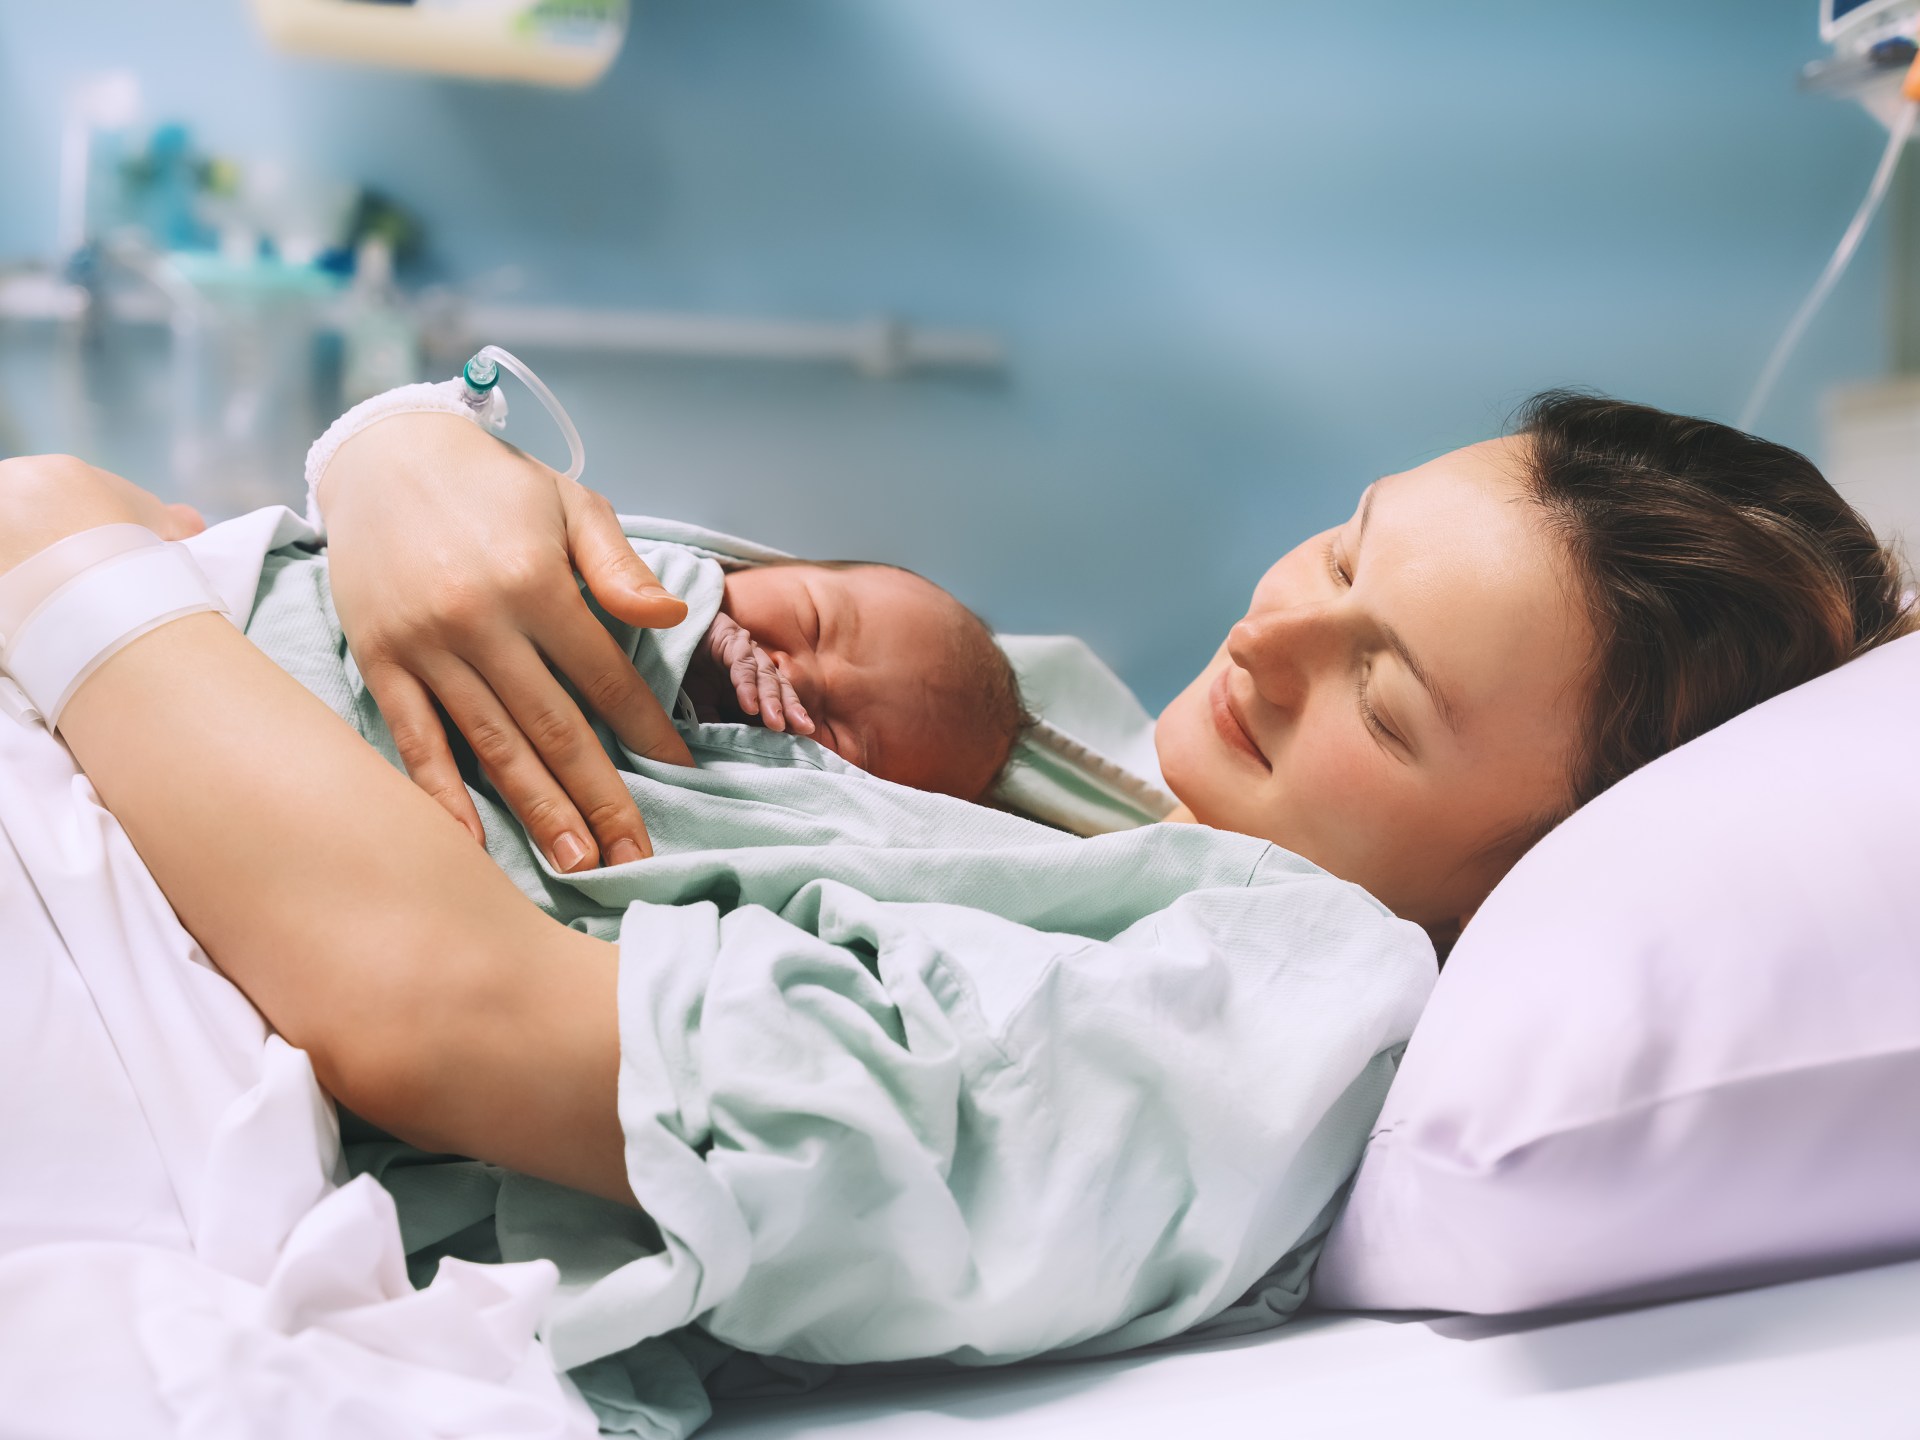 هل تخفف الولادة بالتنويم المغناطيسي من آلام المخاض؟ | مرأة – البوكس نيوز